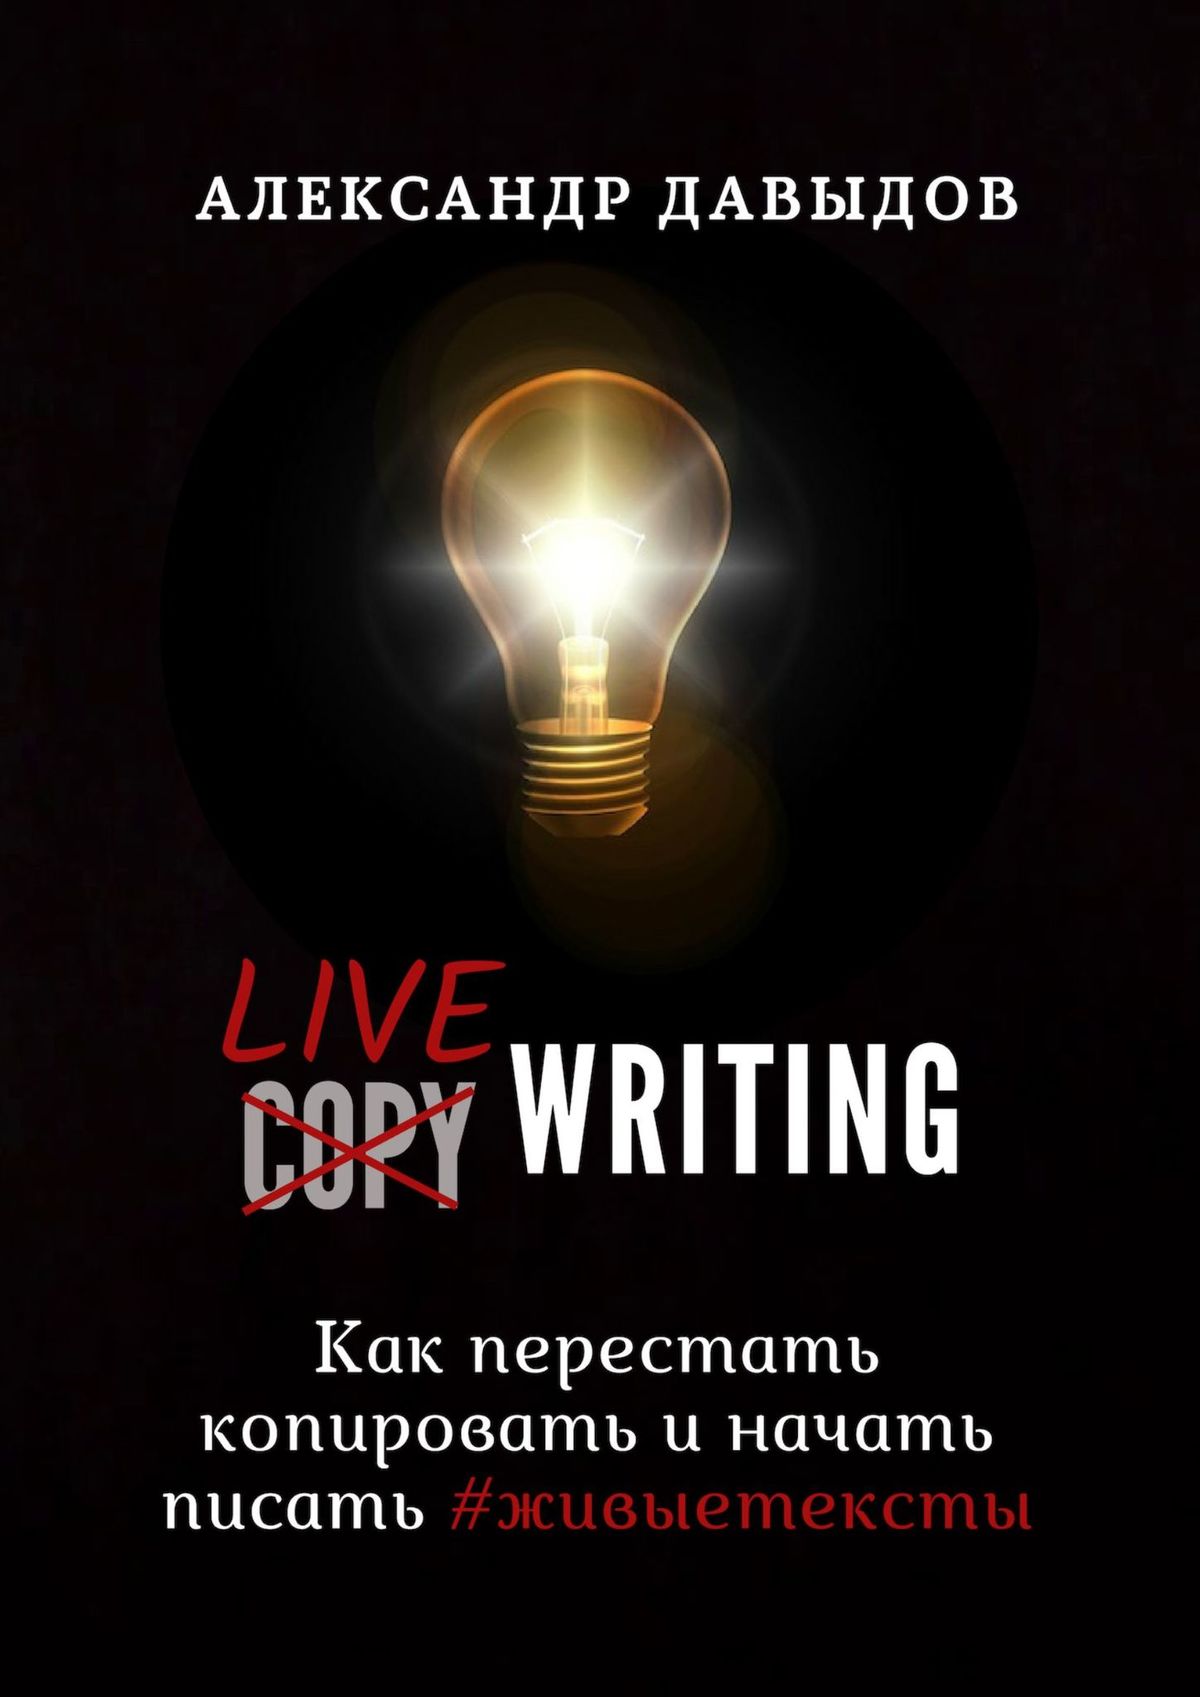 Livewriting.Как перестать копировать и начать писать #живыетексты